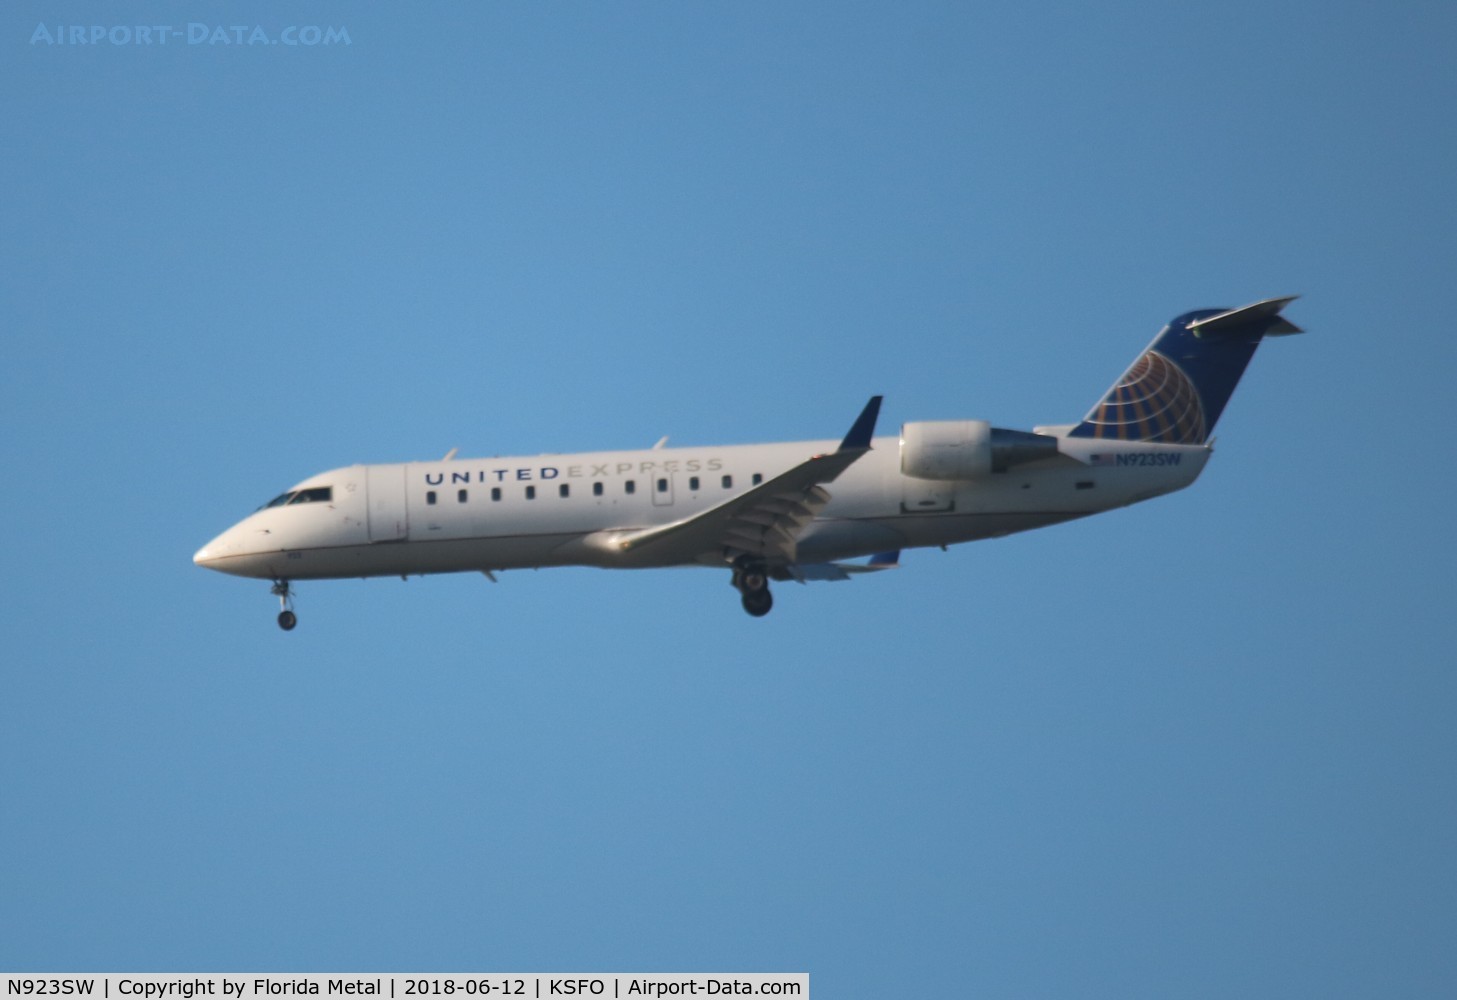 N923SW, 2002 Bombardier CRJ-200LR (CL-600-2B19) C/N 7664, SFO spotting